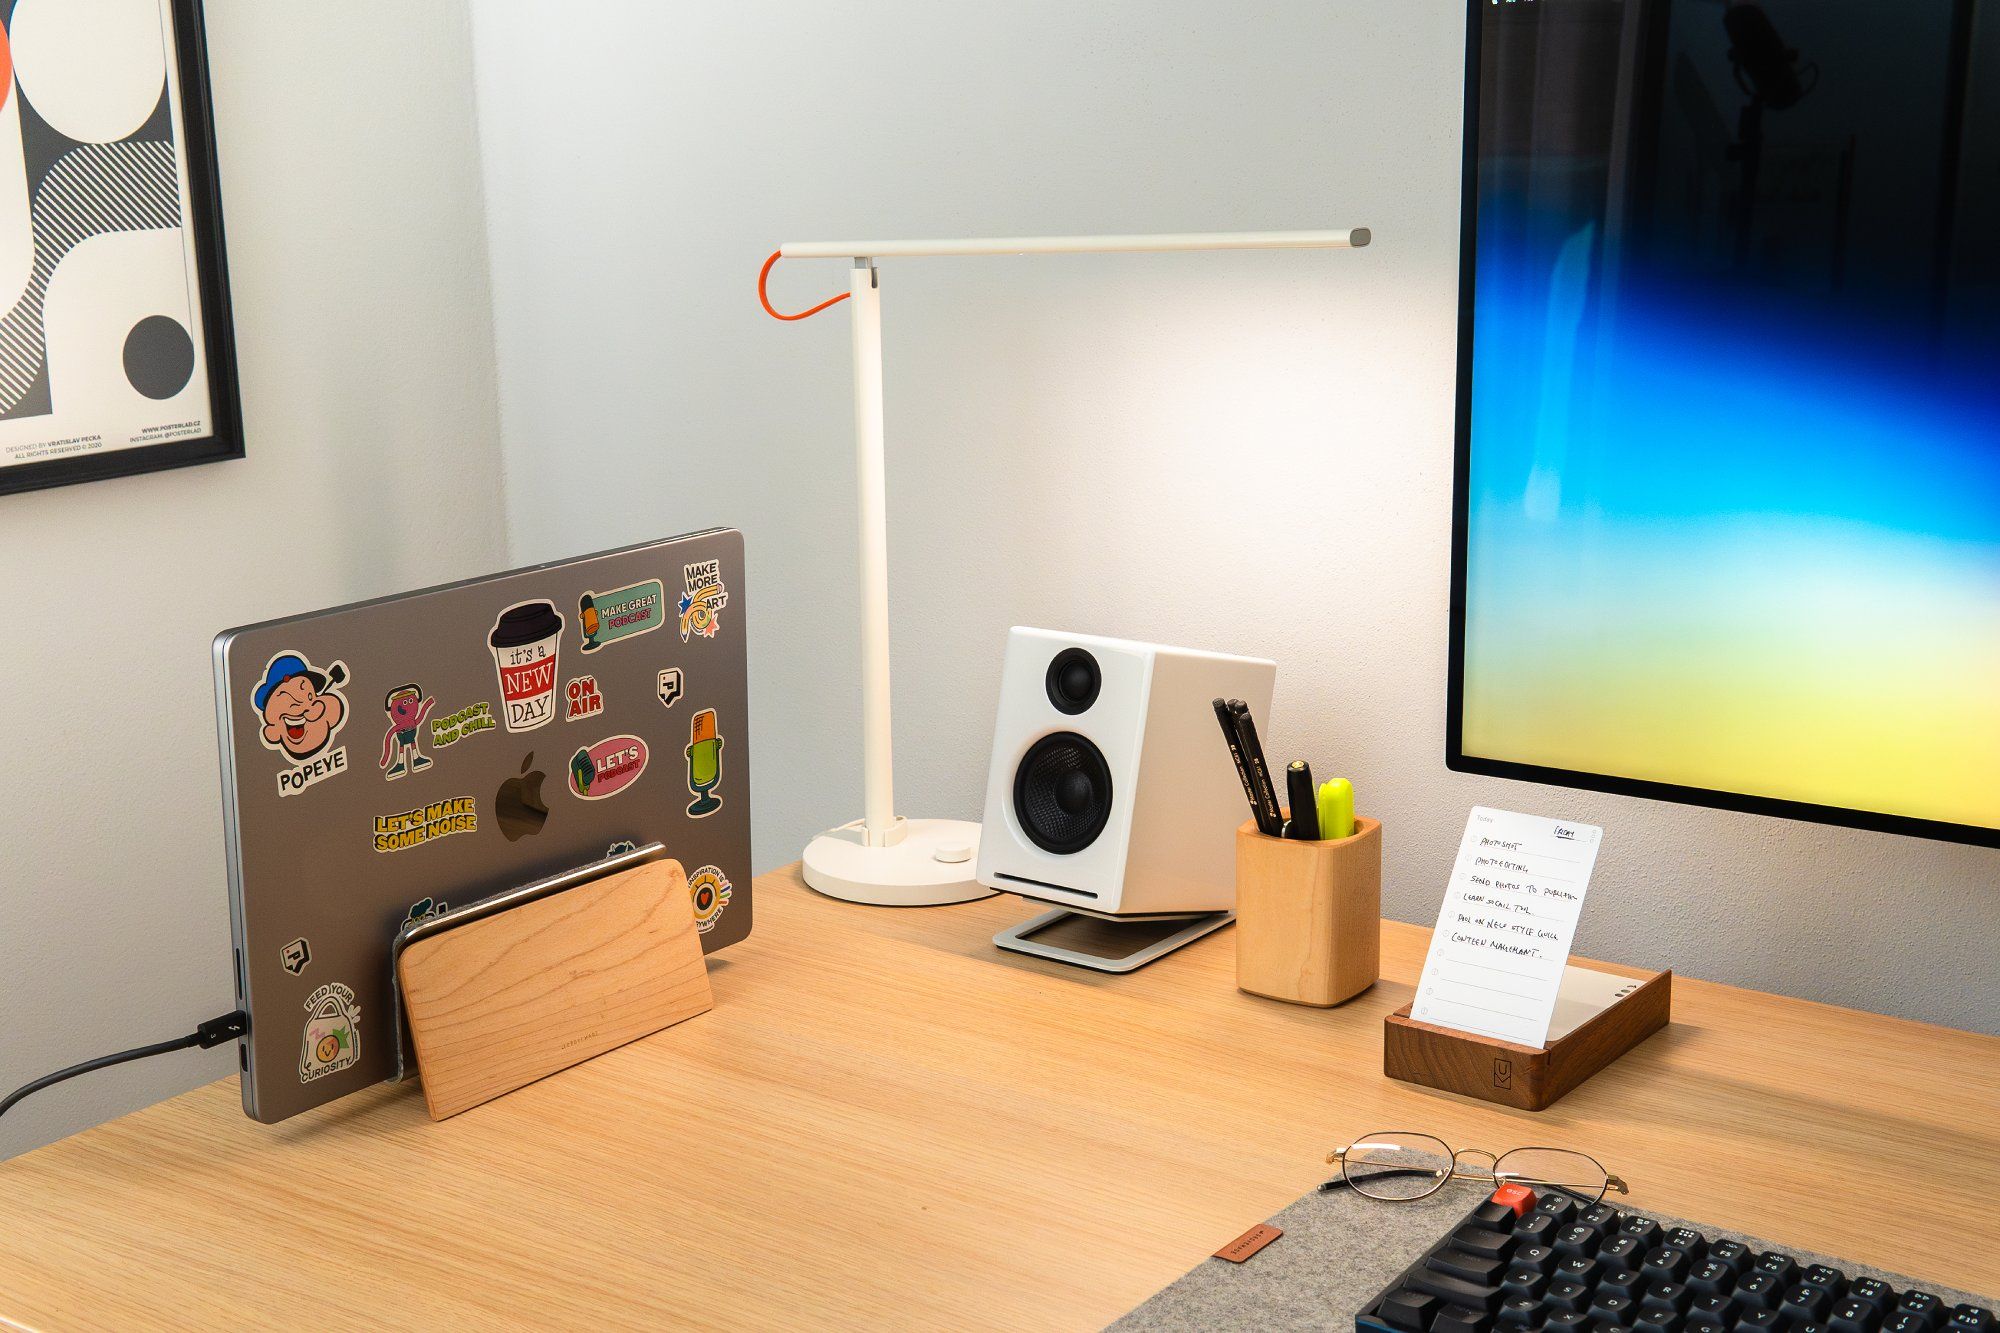 Góc bên trái của bàn làm việc trưng bày một chiếc MacBook M1 trên giá đỡ, kèm theo đèn bàn LED Xiaomi